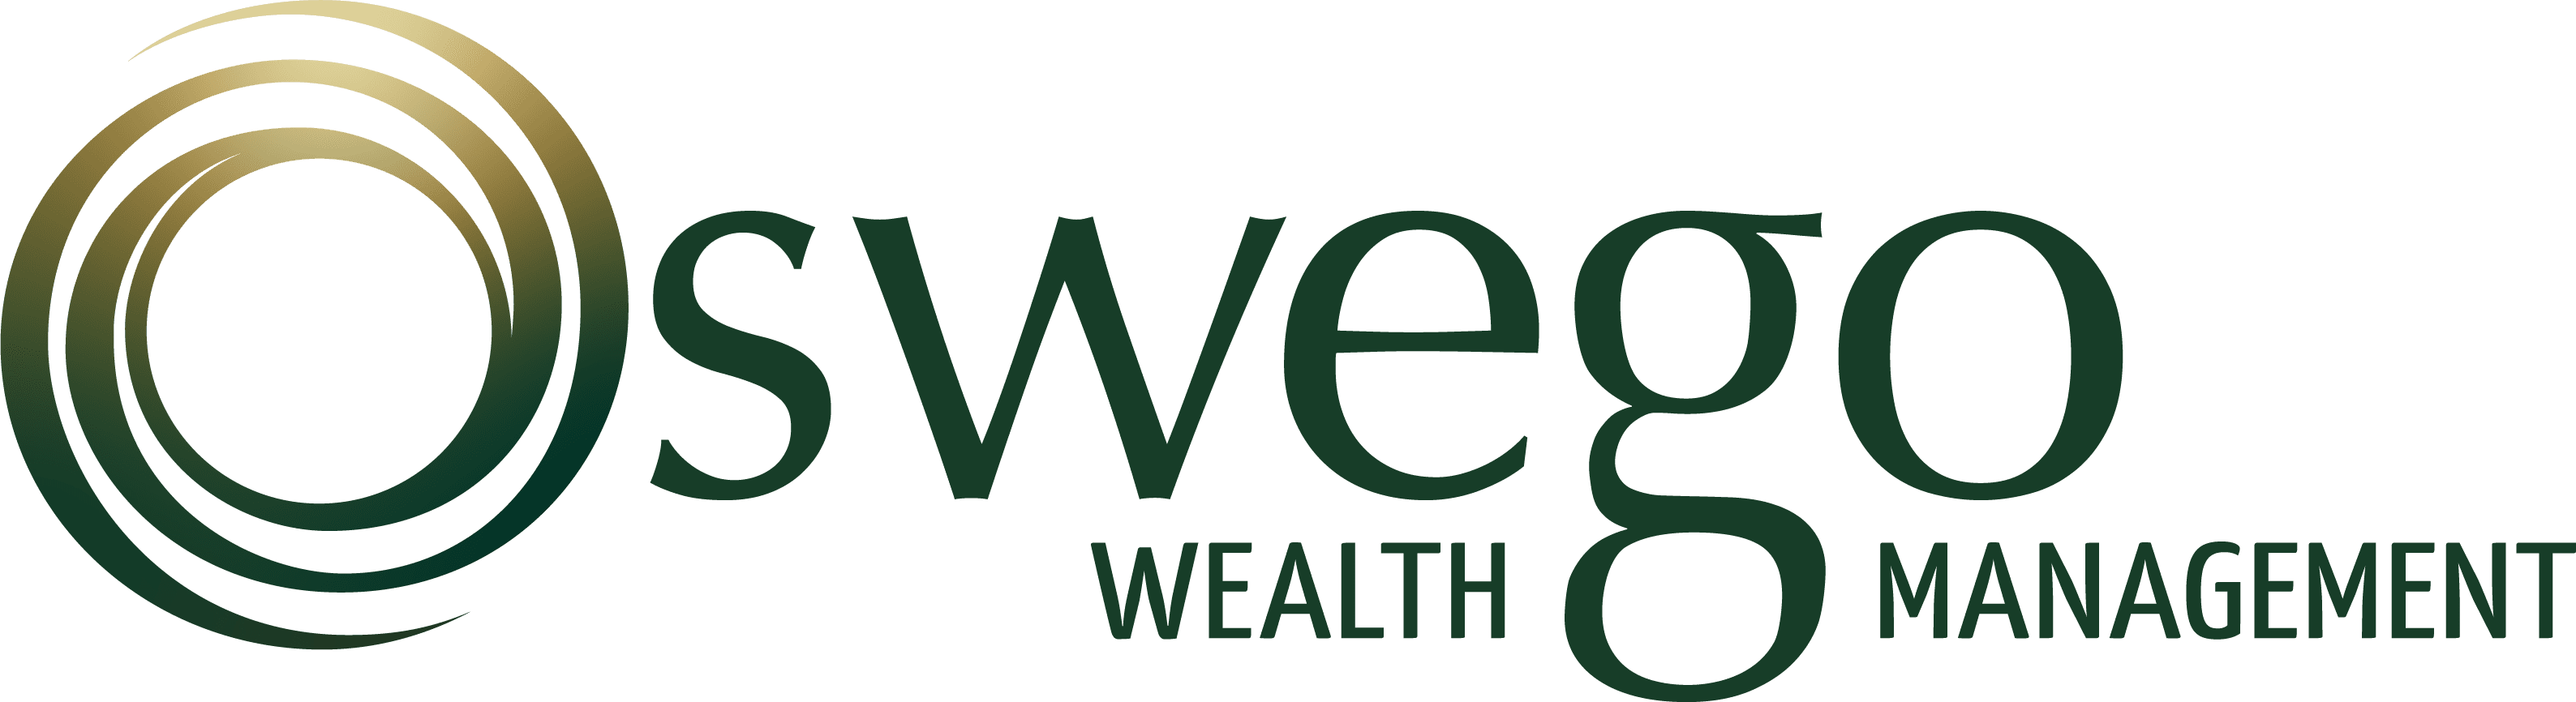 oswego wealth managment logo